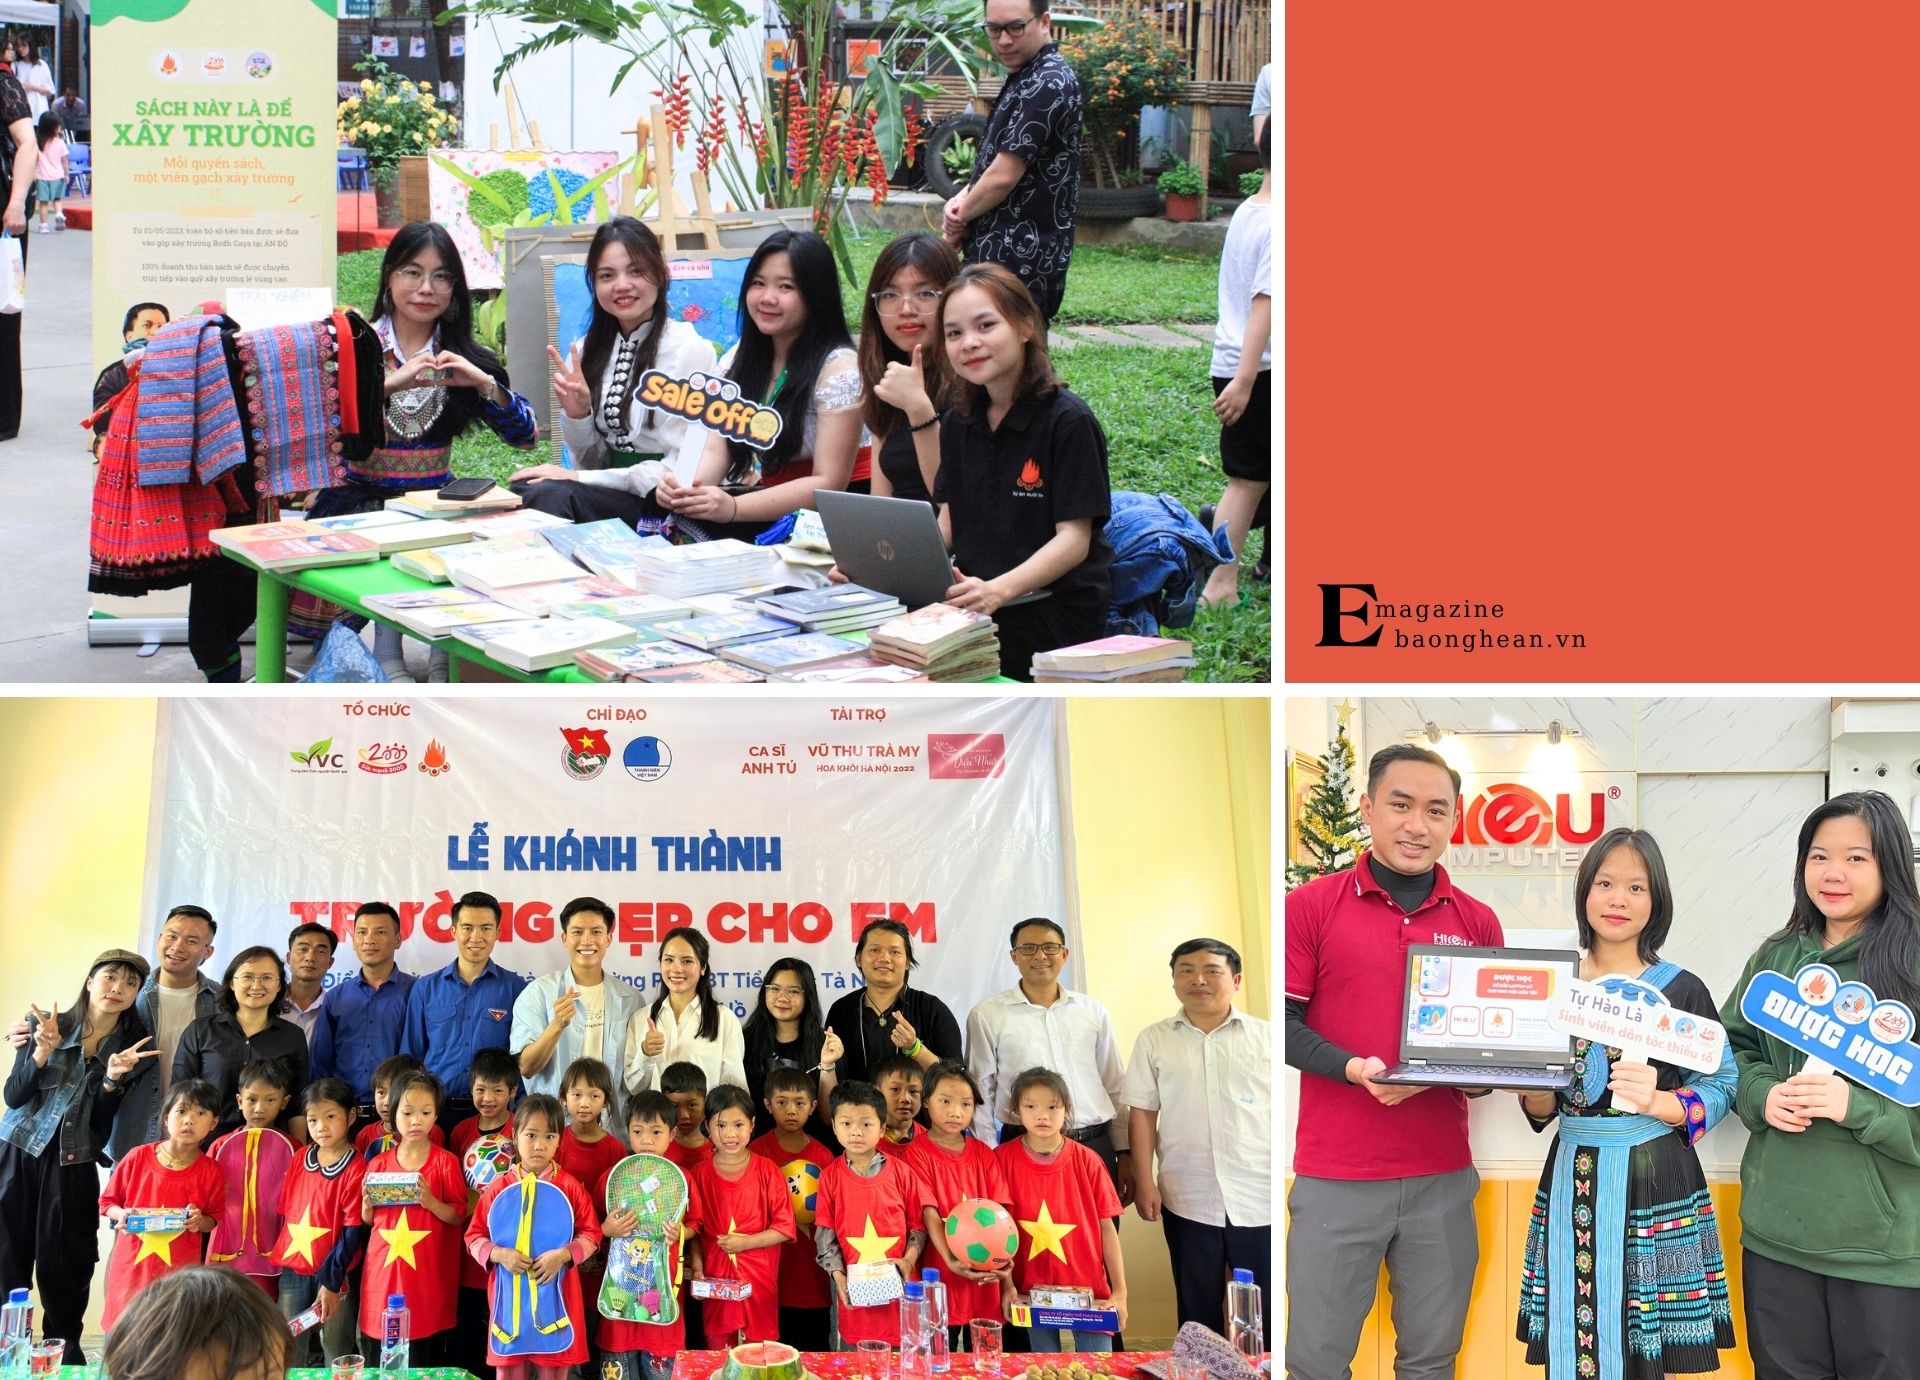 Ngay từ những ngày đầu là sinh viên, Quỳnh Anh đã rất năng nổ tham gia các hoạt động thiện nguyện, các dự án vì cộng đồng.